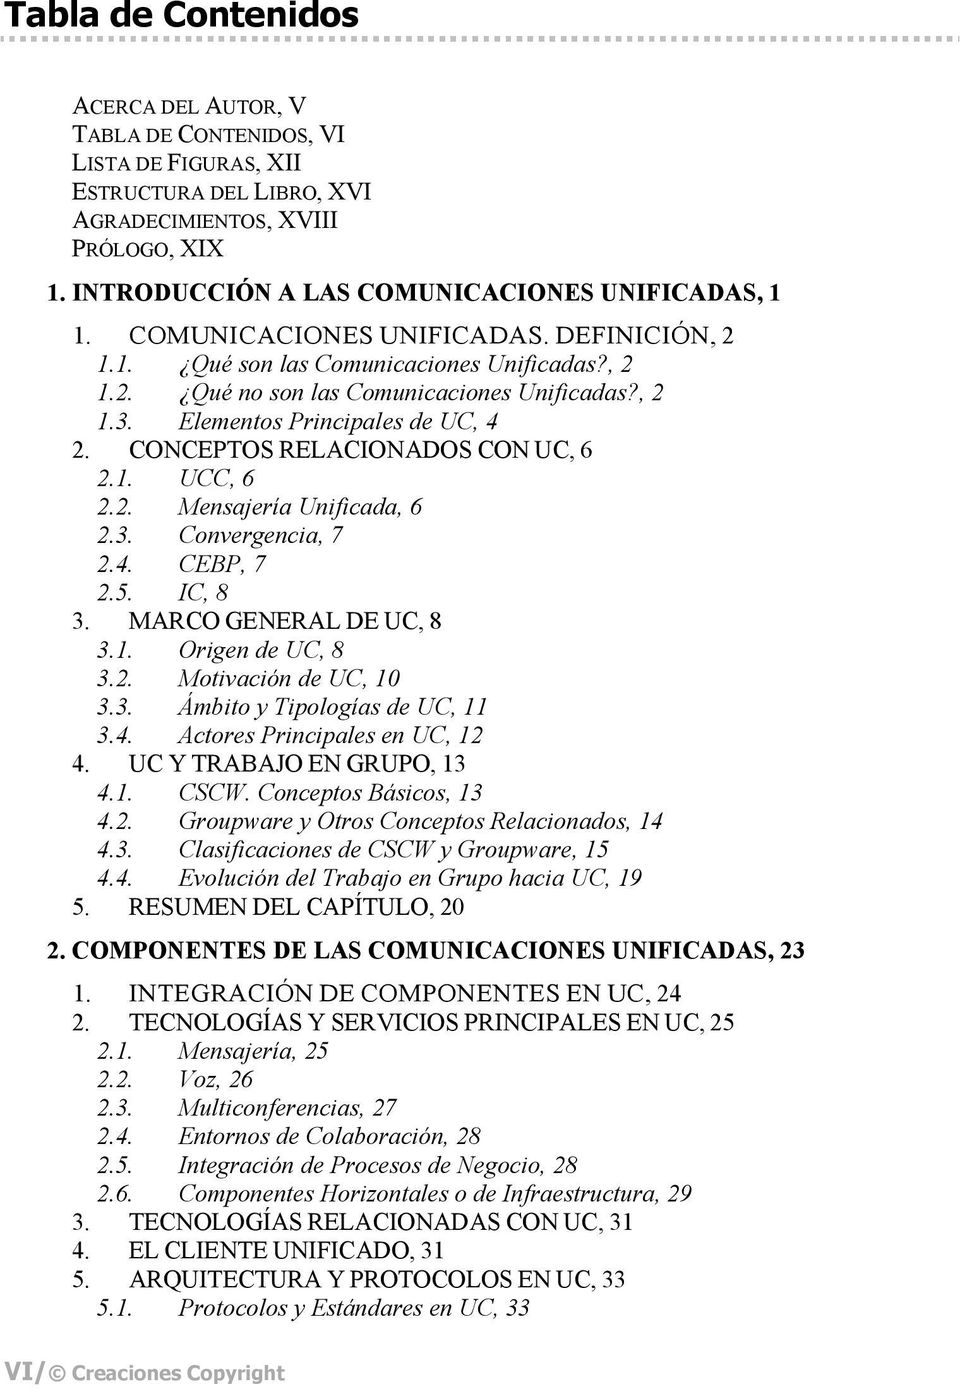 Elementos Principales de UC, 4 2. CONCEPTOS RELACIONADOS CON UC, 6 2.1. UCC, 6 2.2. Mensajería Unificada, 6 2.3. Convergencia, 7 2.4. CEBP, 7 2.5. IC, 8 3. MARCO GENERAL DE UC, 8 3.1. Origen de UC, 8 3.